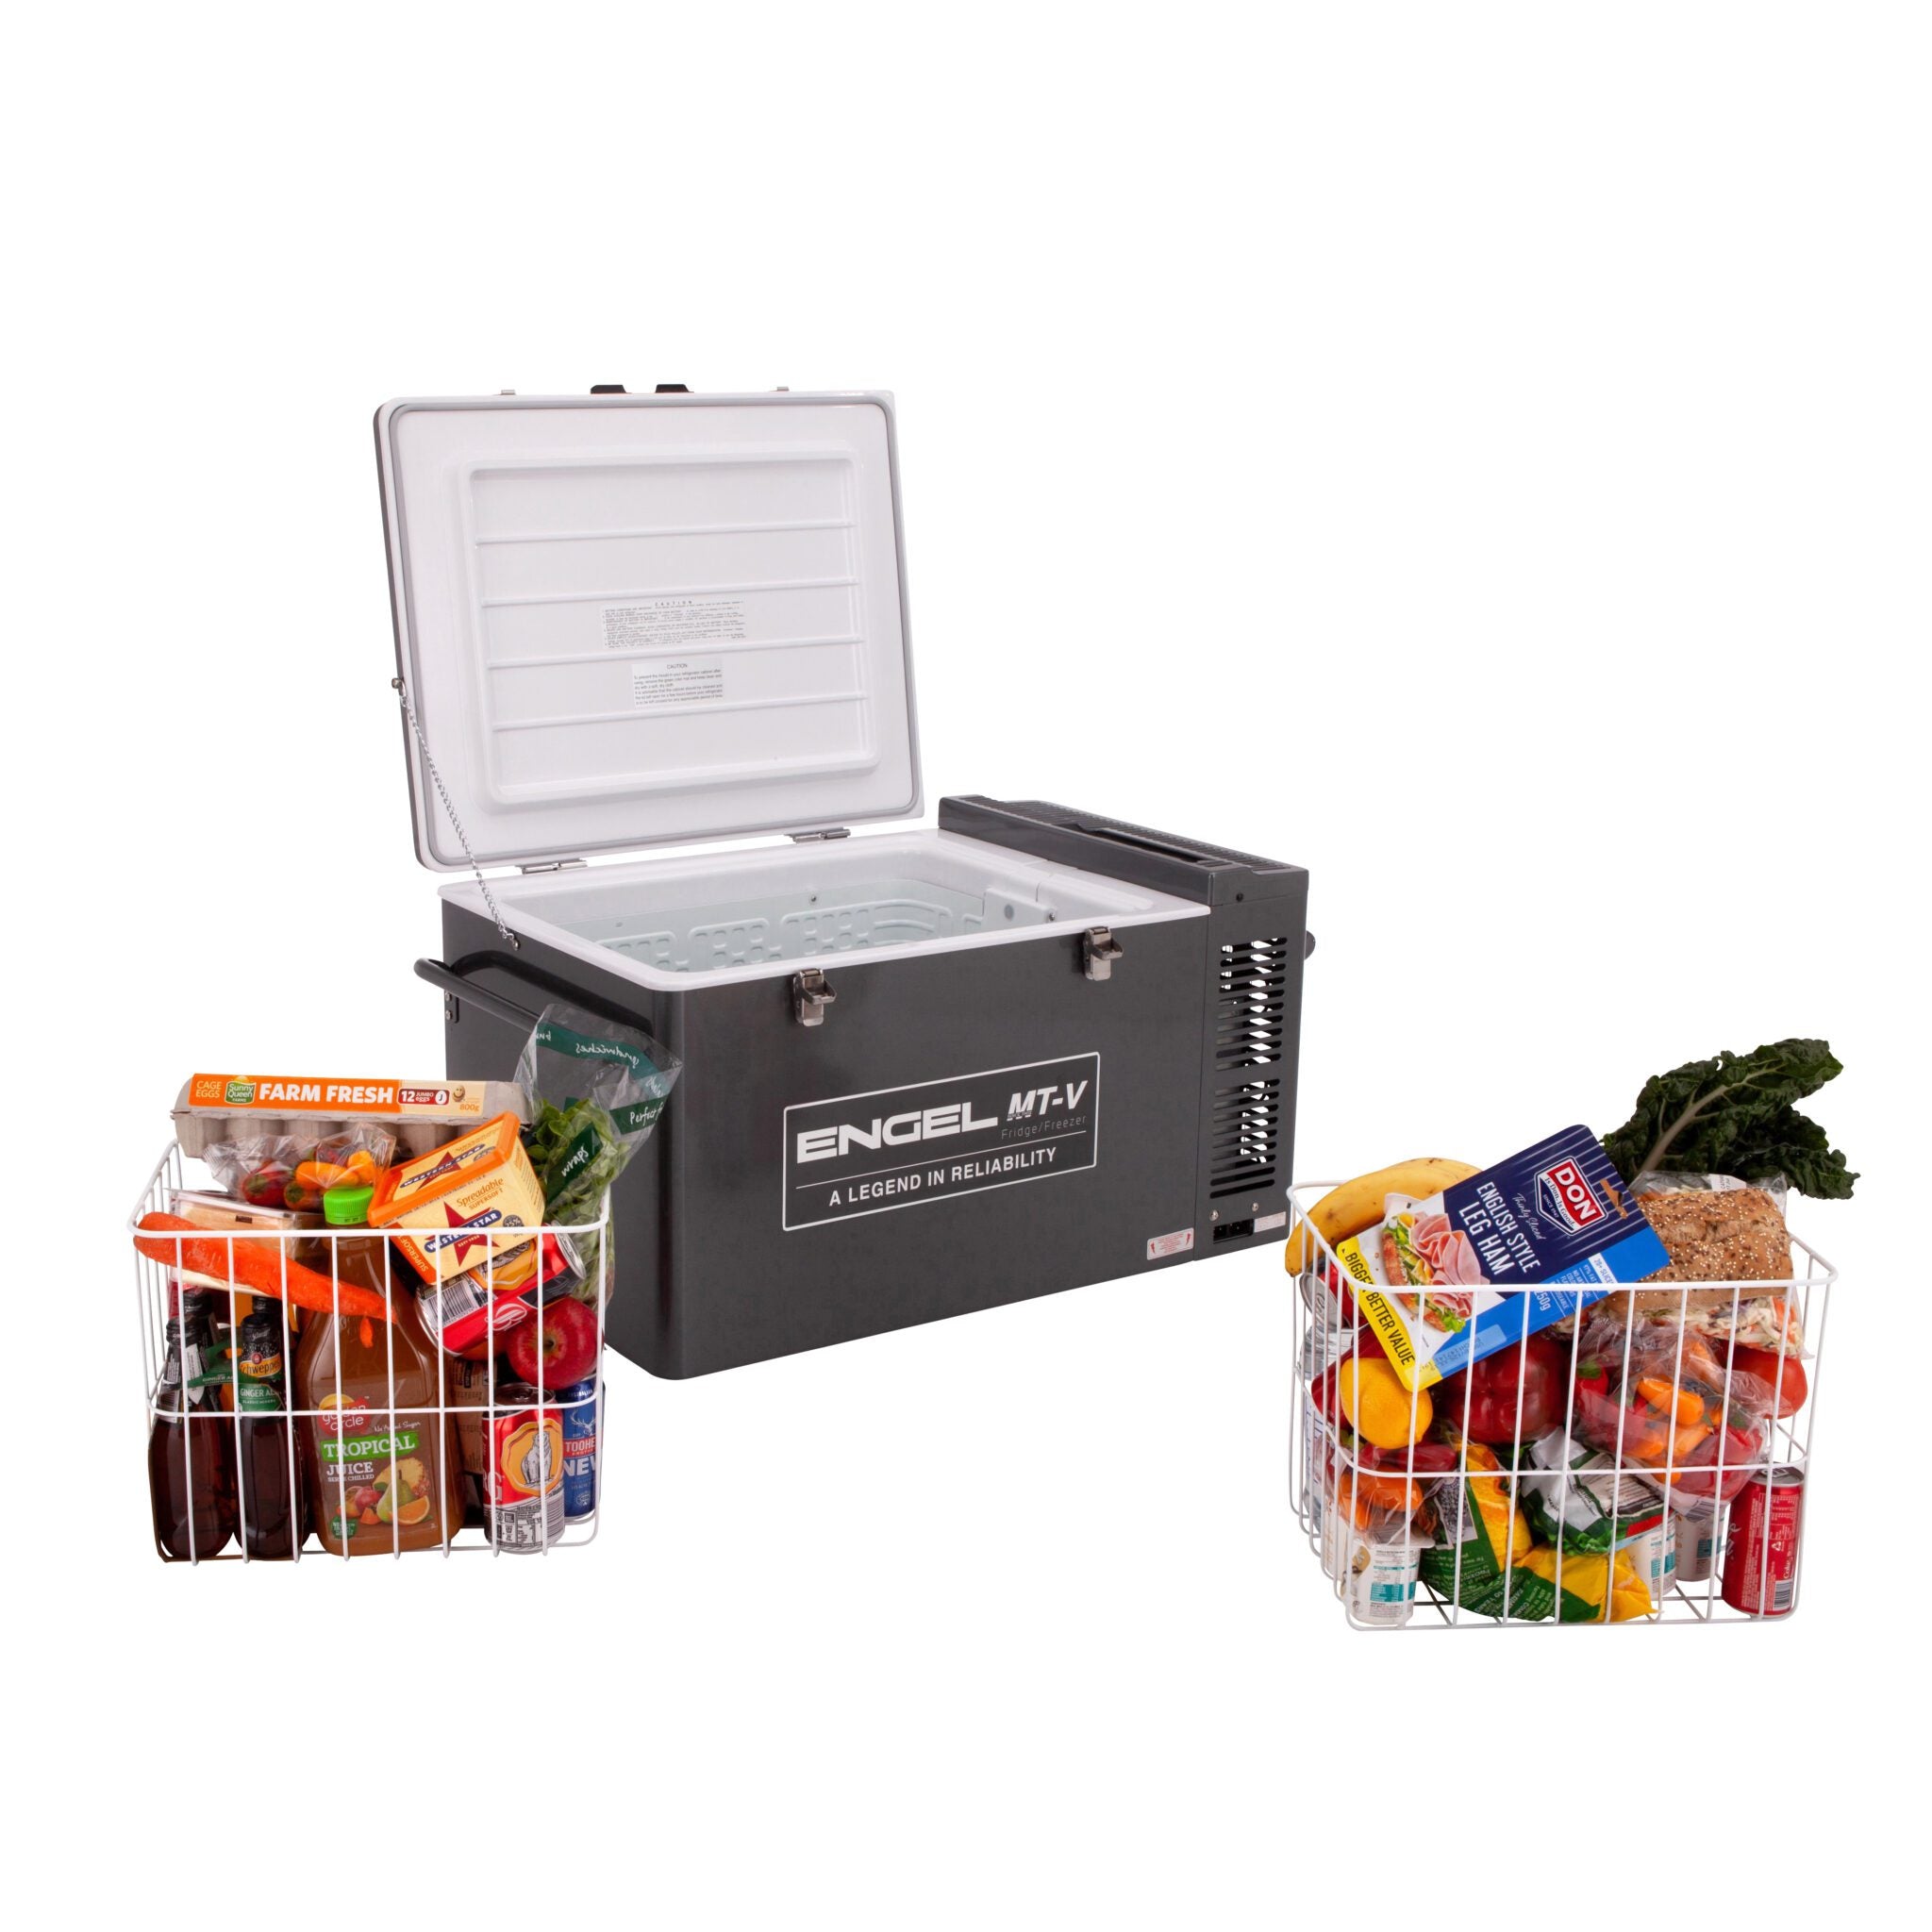 Main Food Freezer Basket - MT-V60FC